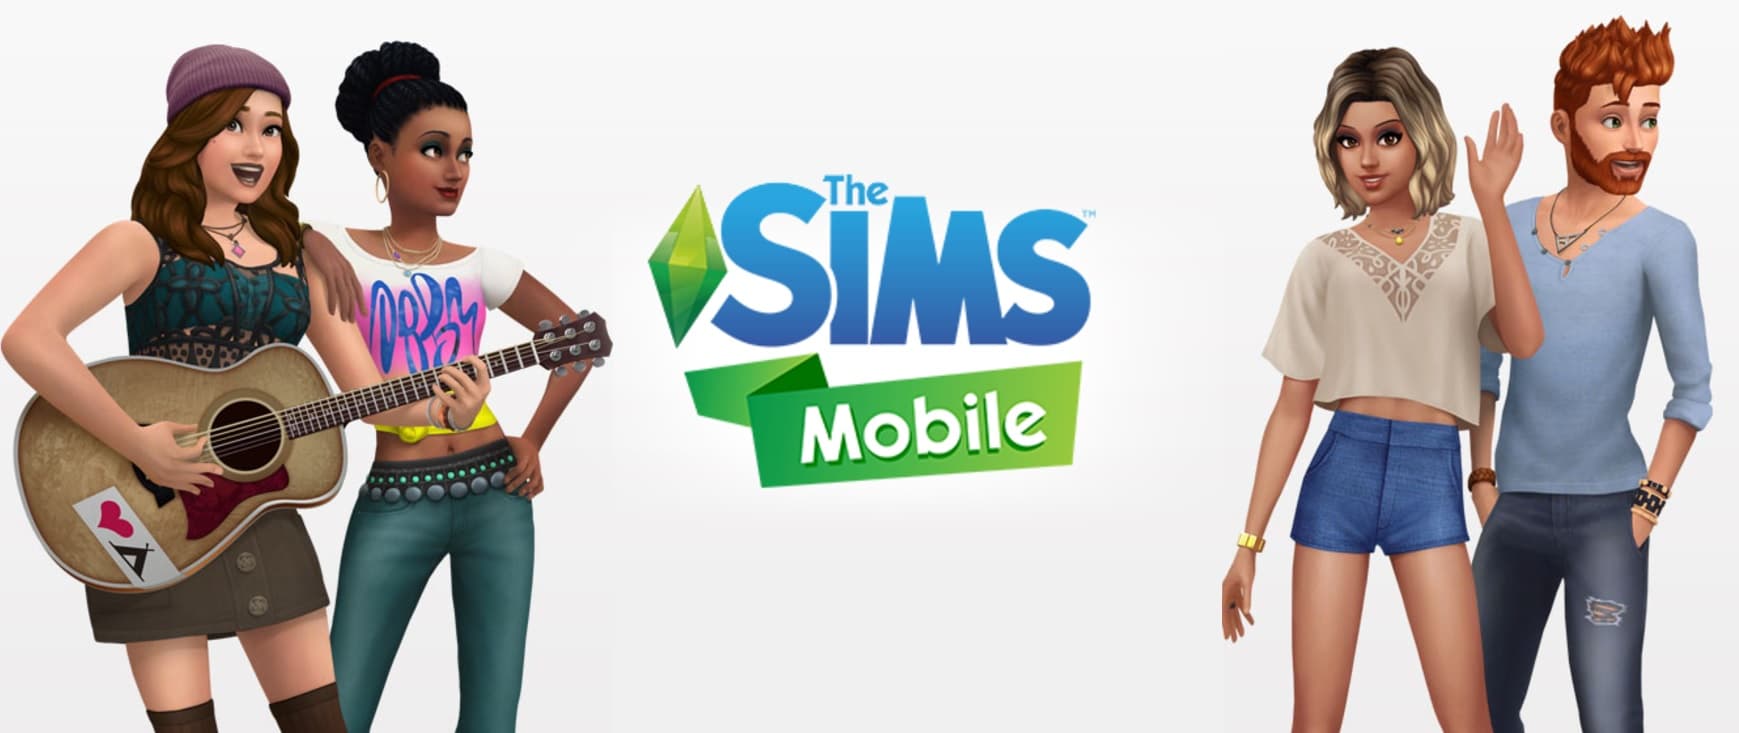 เตรียมป่วนชาวซิมในมือถือของคุณ กับเกม The Sims Mobile เร็วๆ นี้!